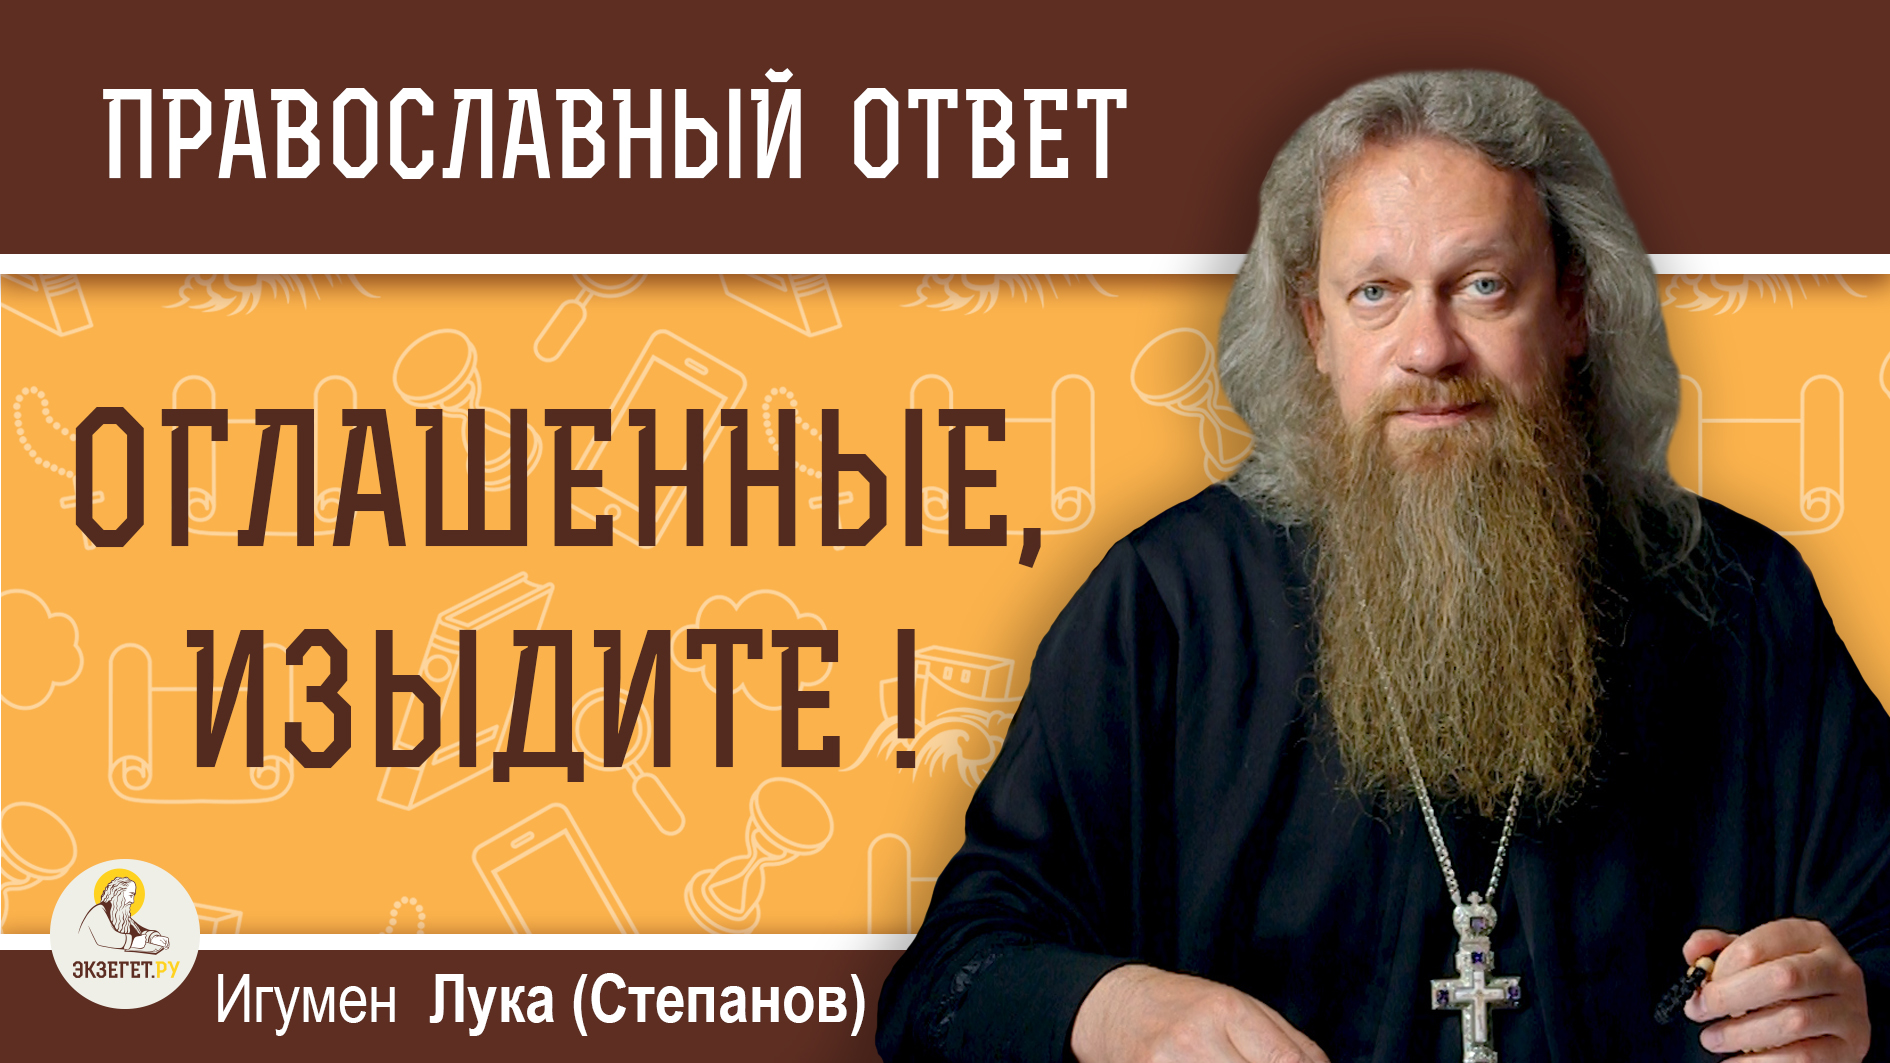 Экзегет сайт православный